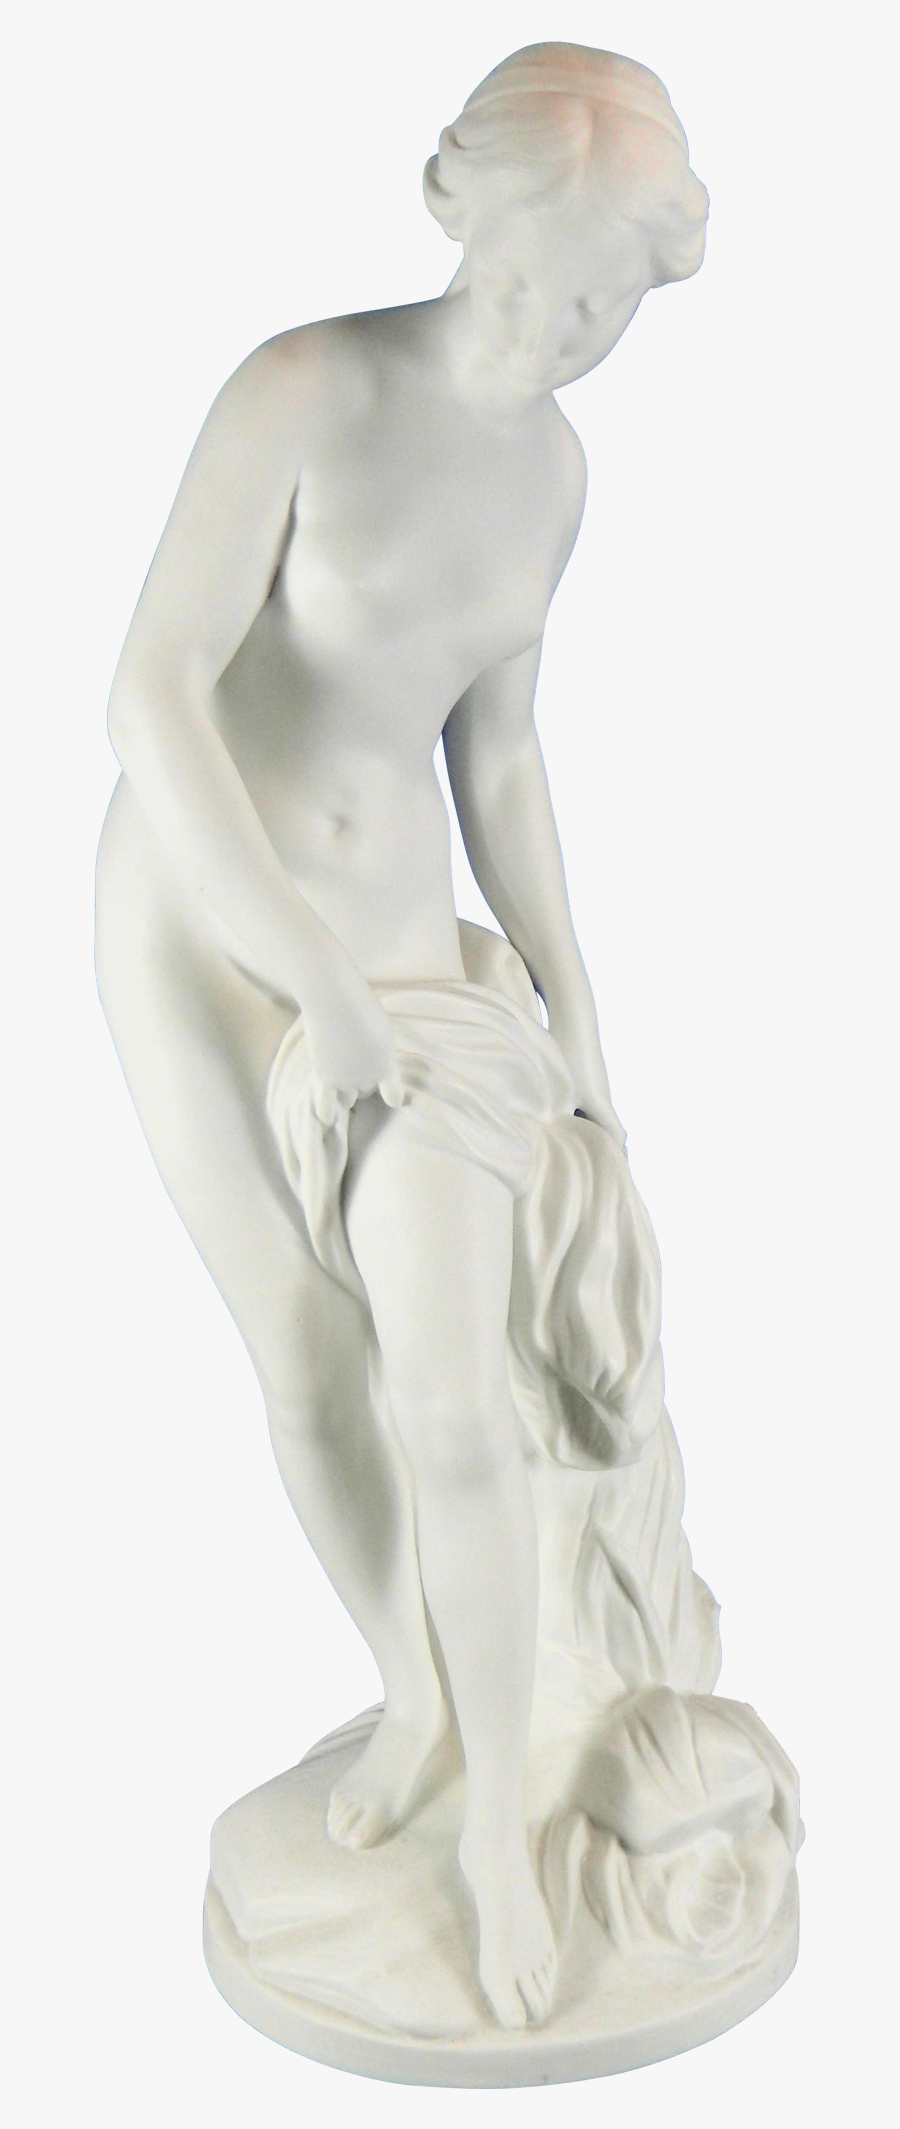 Aphrodite Statue Png, Transparent Clipart